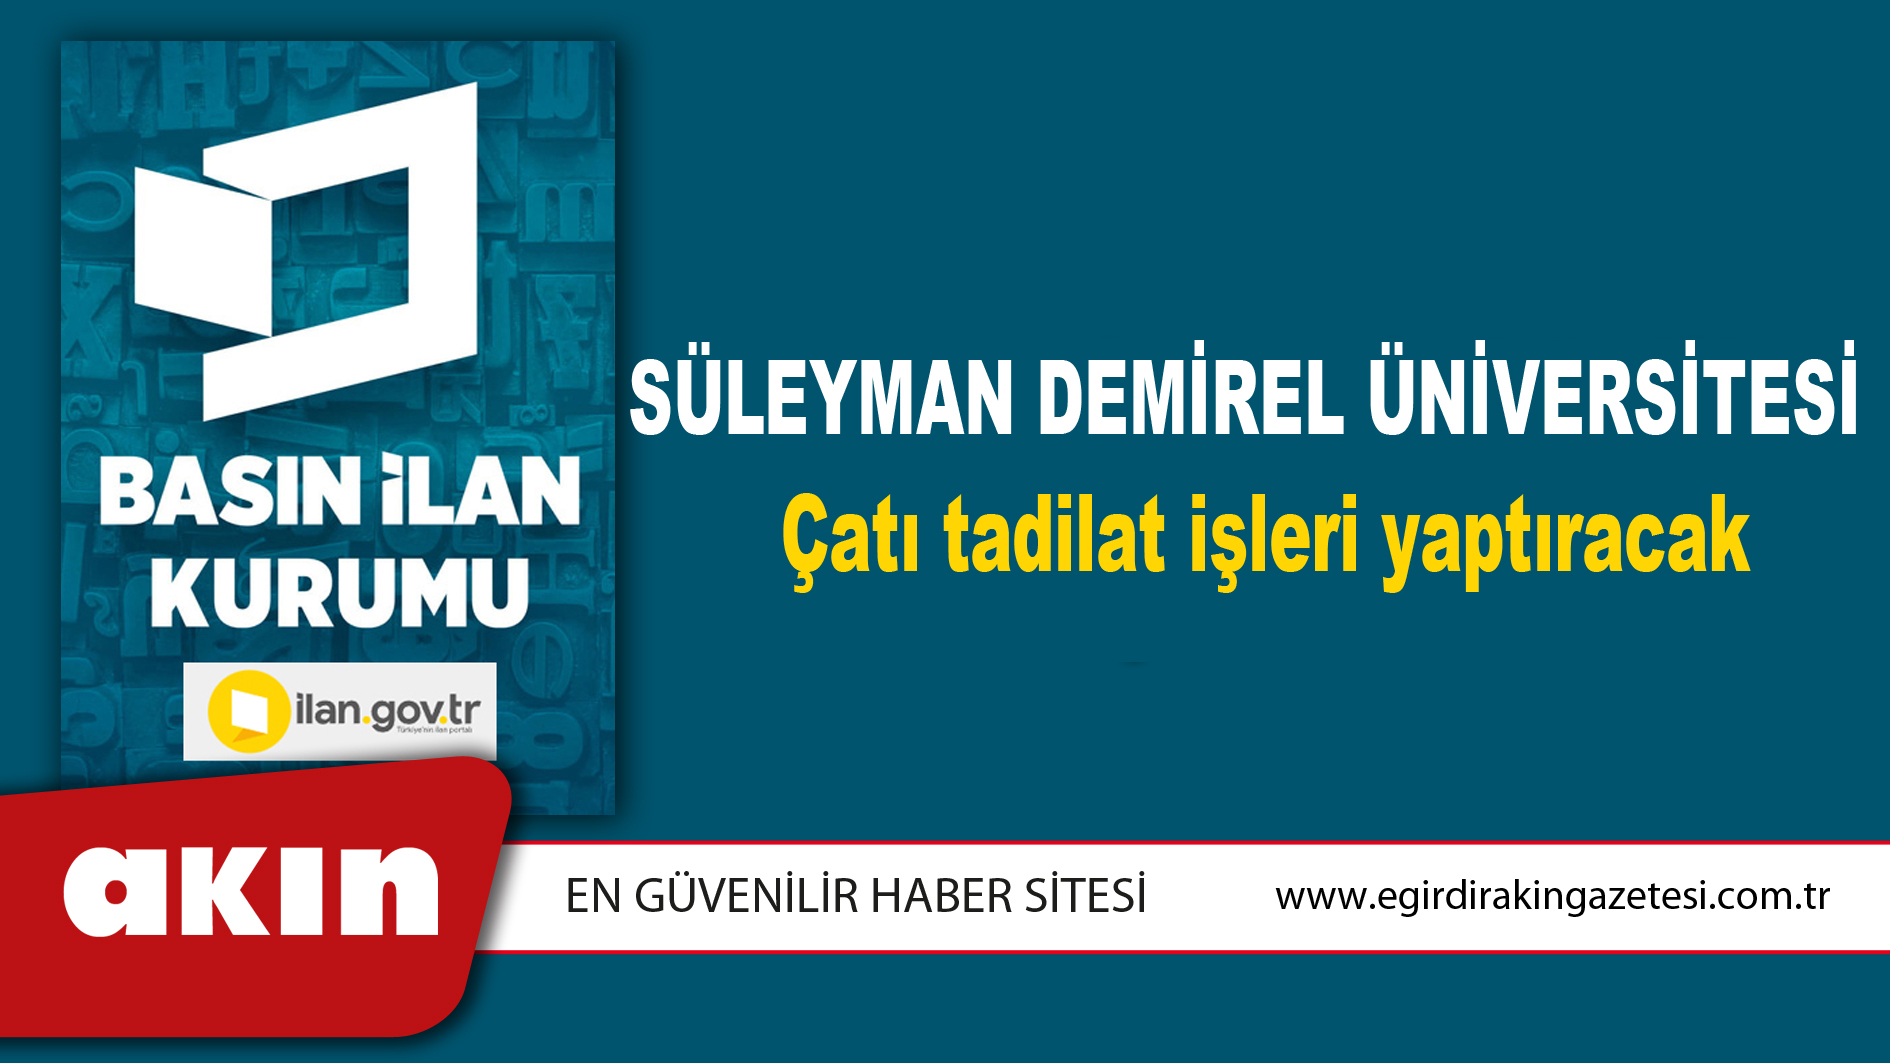 Süleyman Demirel Üniversitesi Çatı tadilat işleri yaptıracak